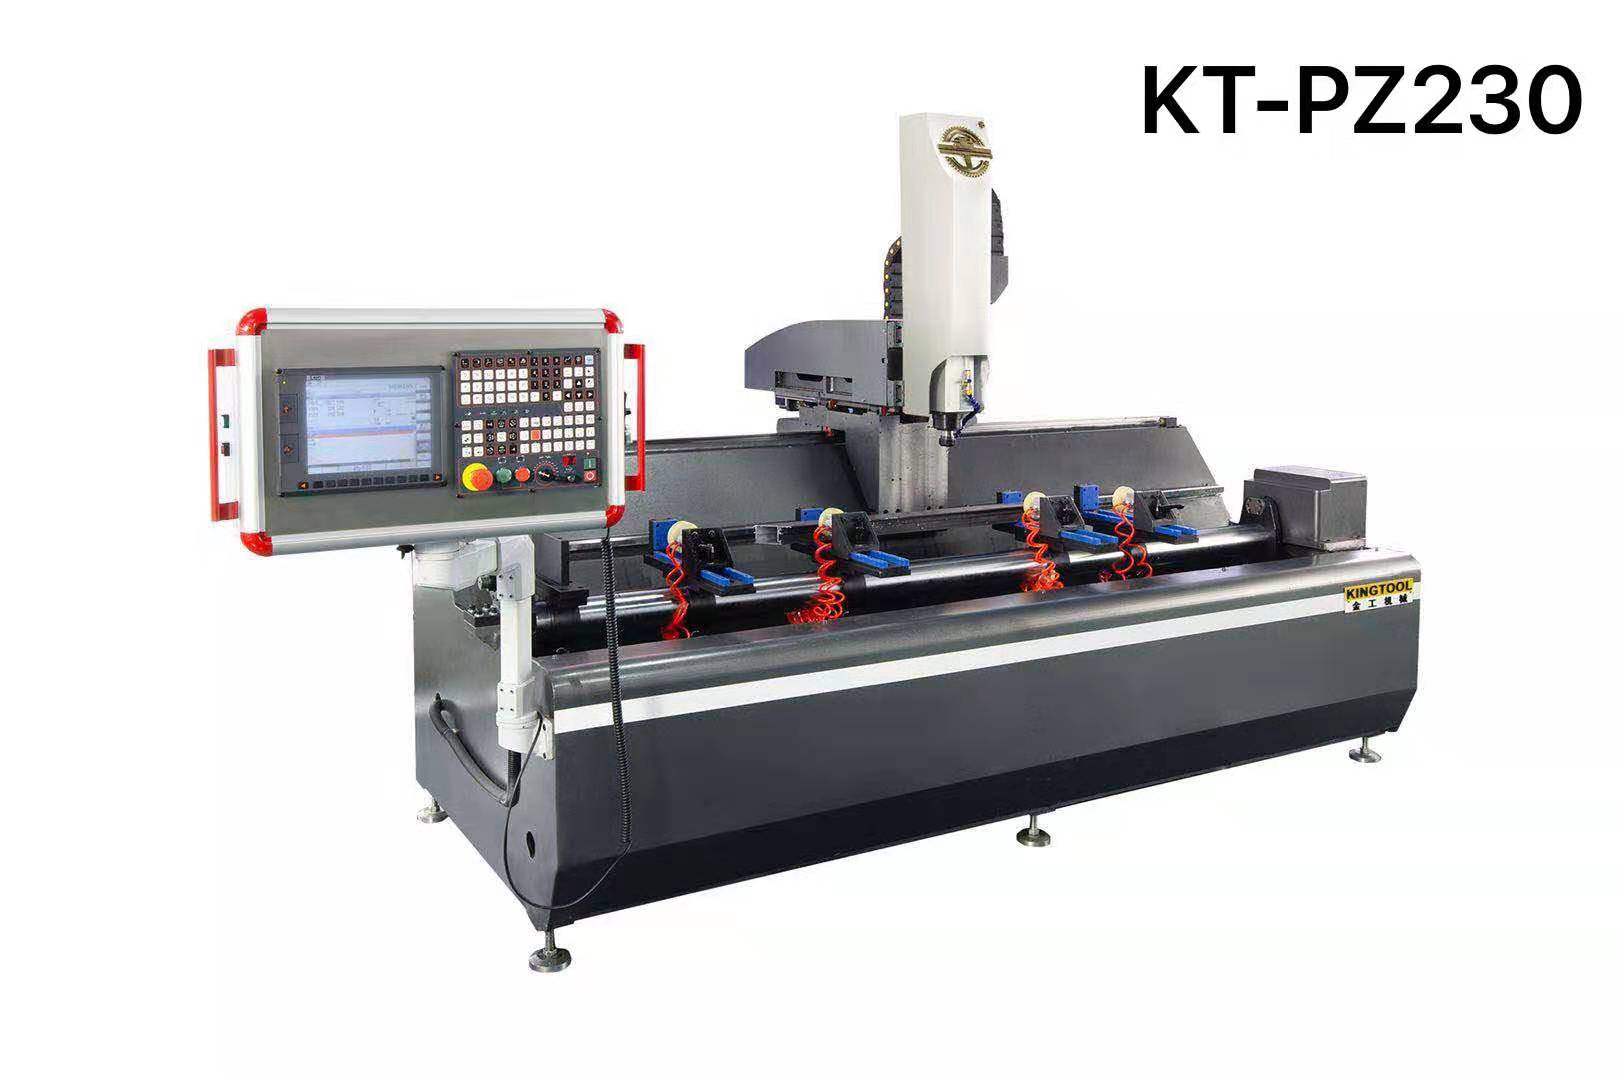 kingtool aluminium machinery Array image394